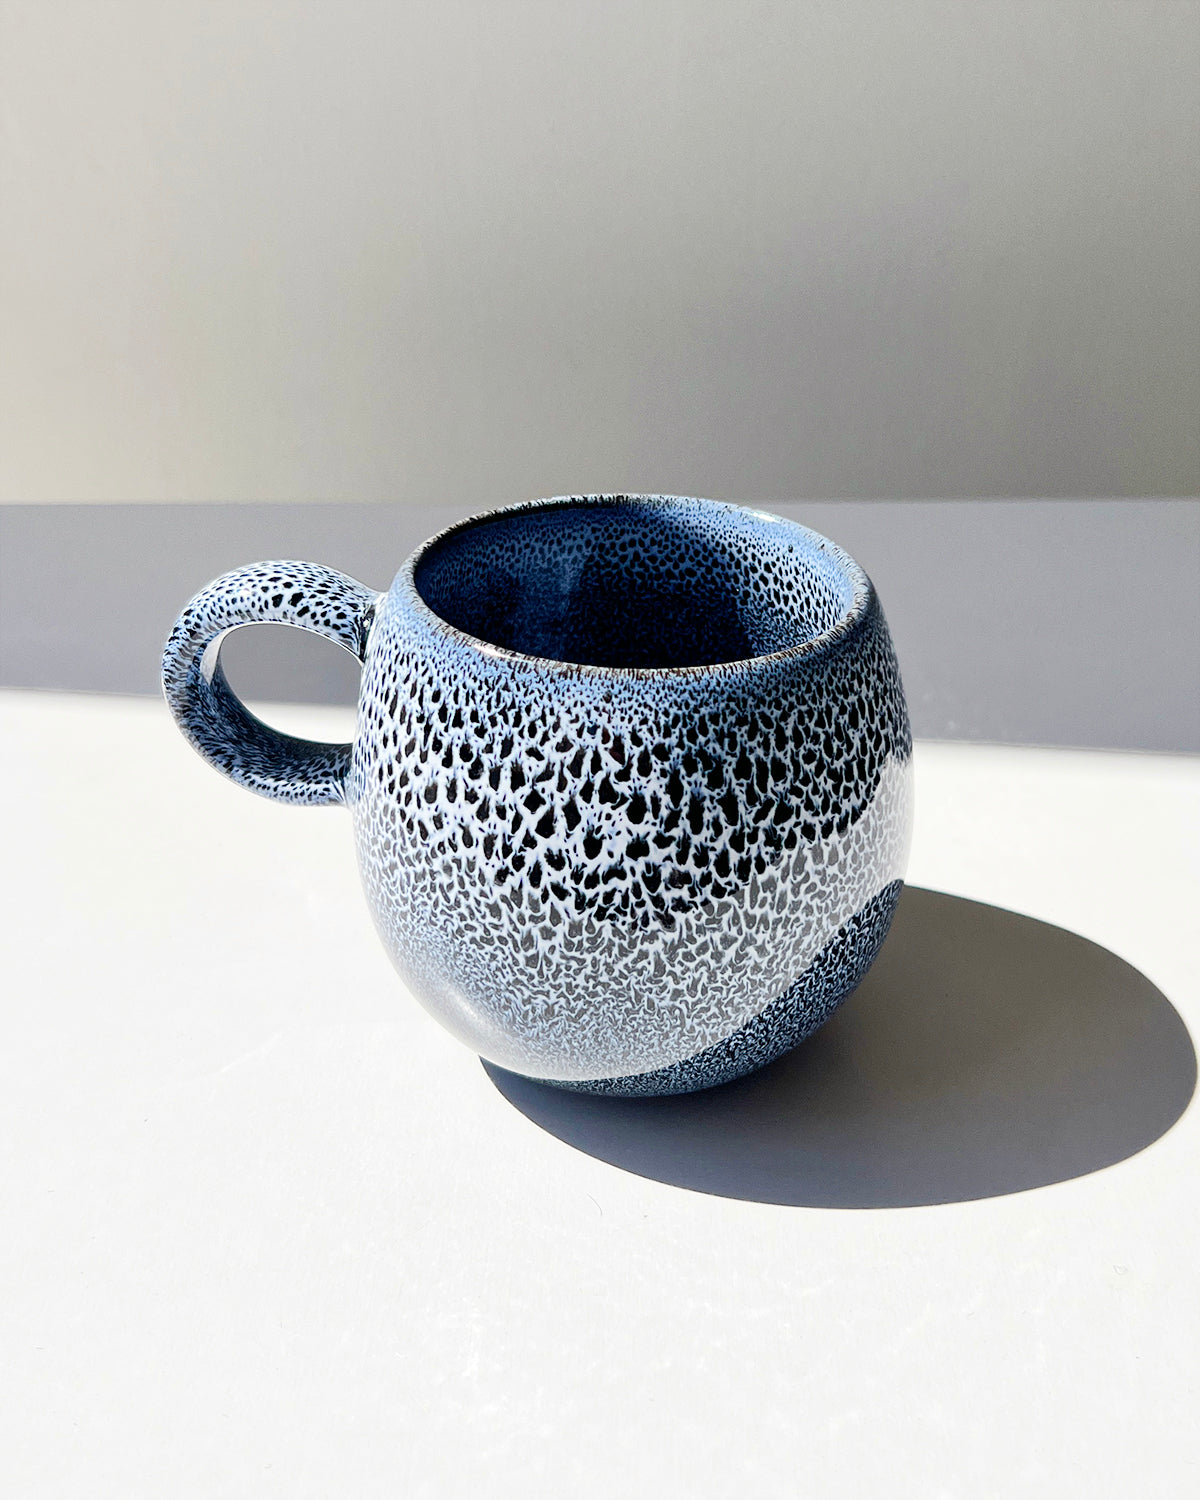 Indigo Ceramic Handmade Mugs - Set of 4